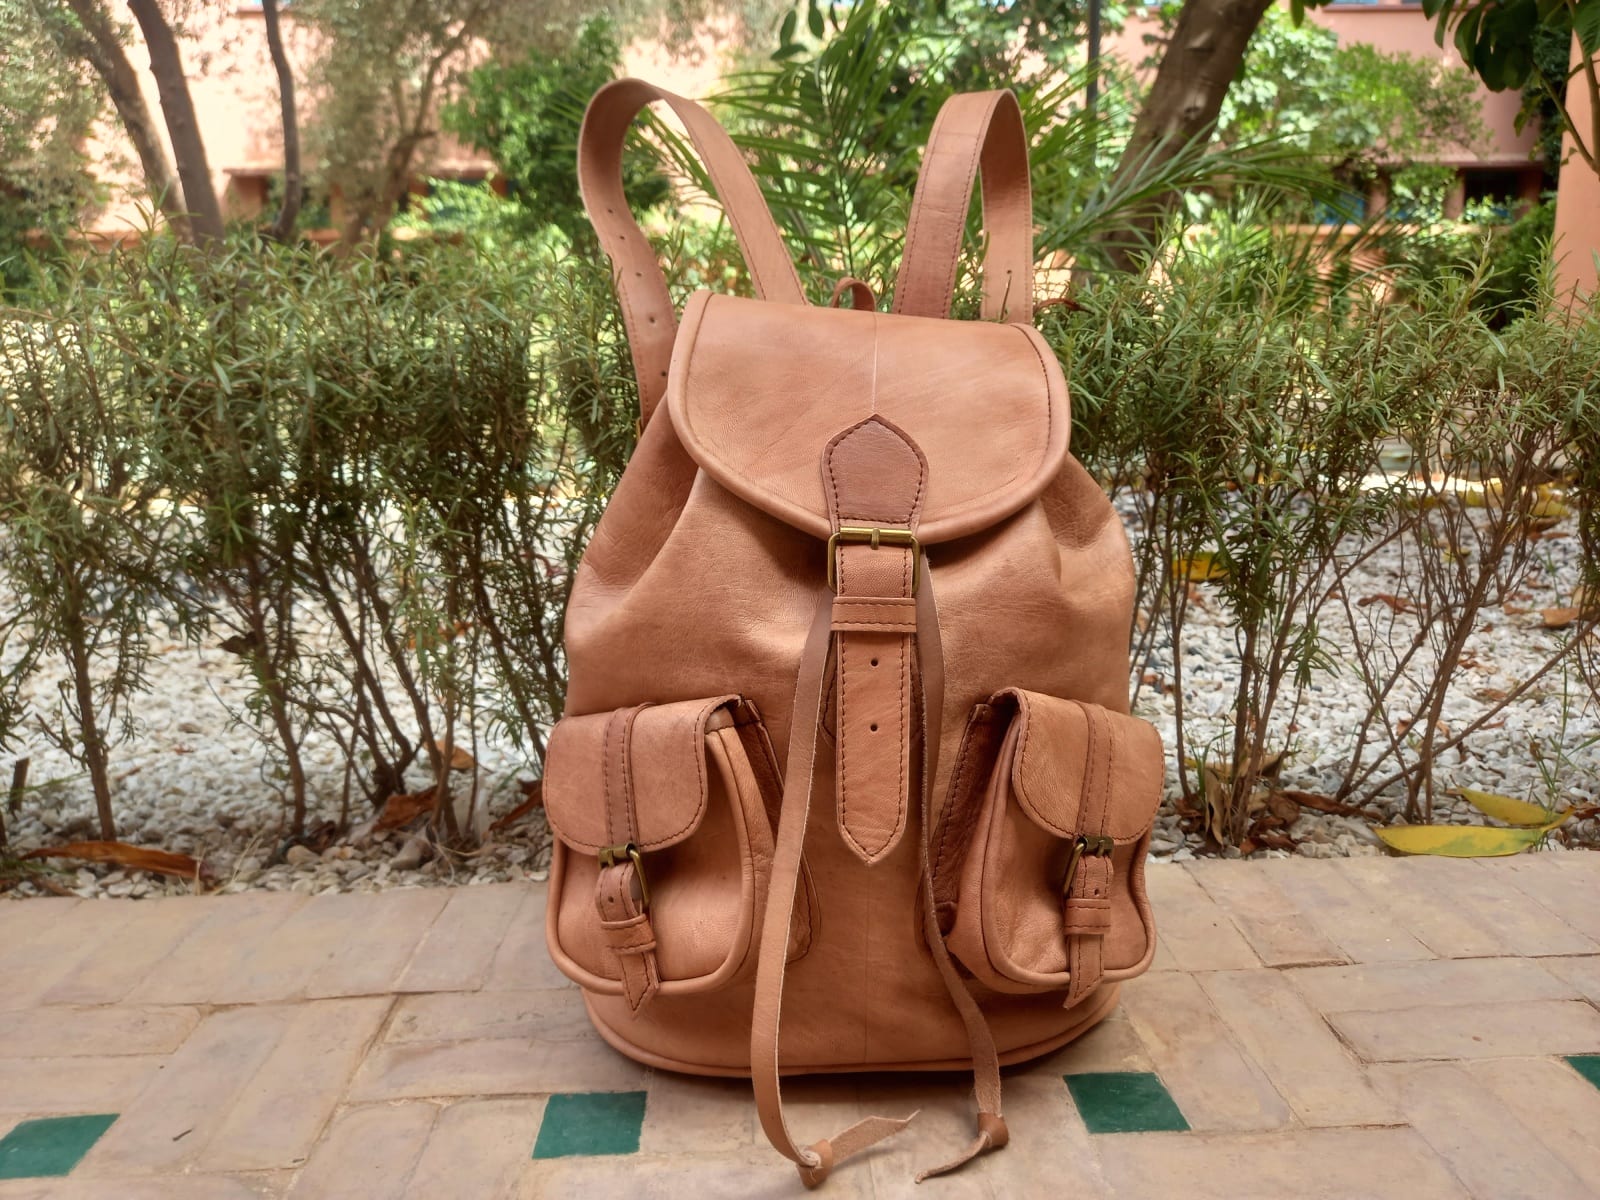  bag leather  Morocco